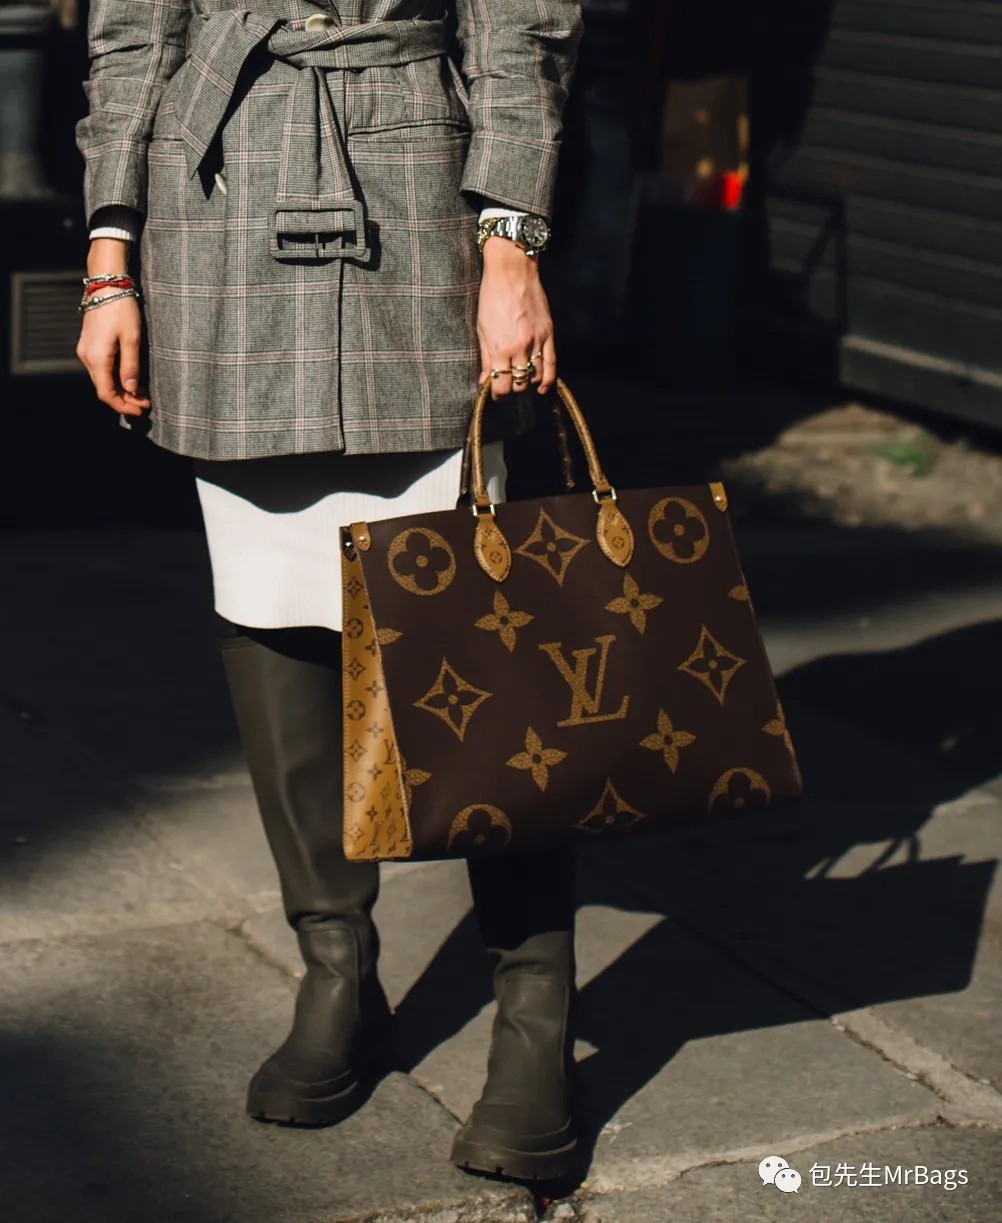 12 populārākās dizaineru reprodukcijas somas pasaulē (atjauninātas 2022. gadā) — labākās kvalitātes viltotās Louis Vuitton somas tiešsaistes veikals, dizaineru somas kopija ru